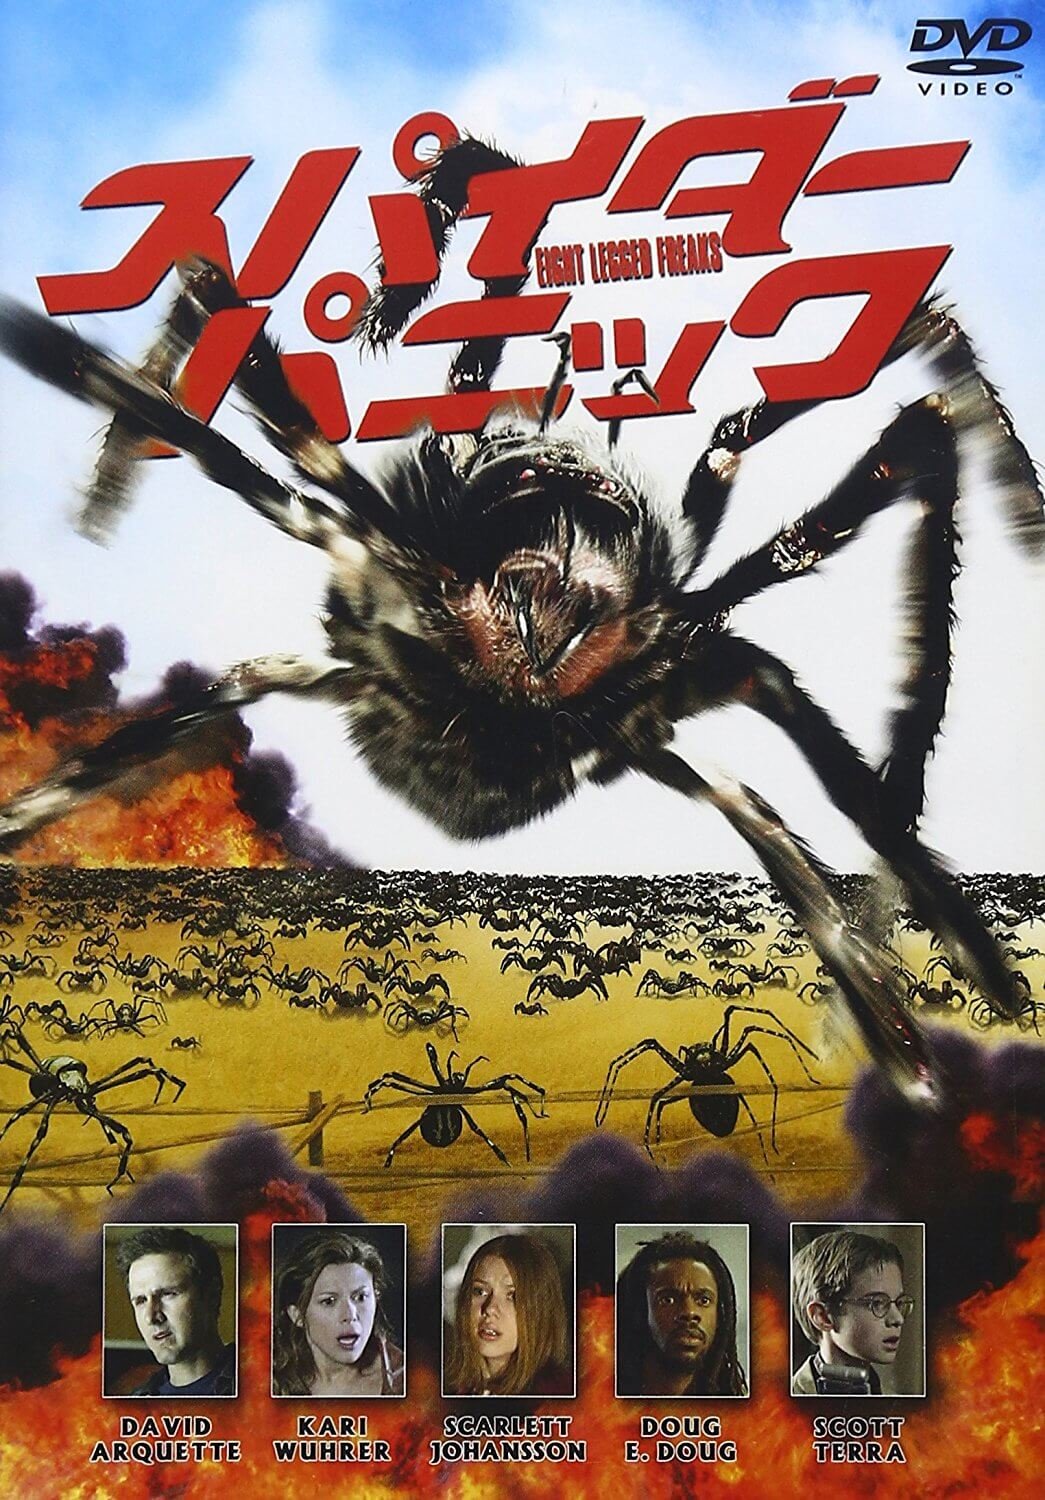 Пауки атакуют. Атака пауков (2002) Постер.